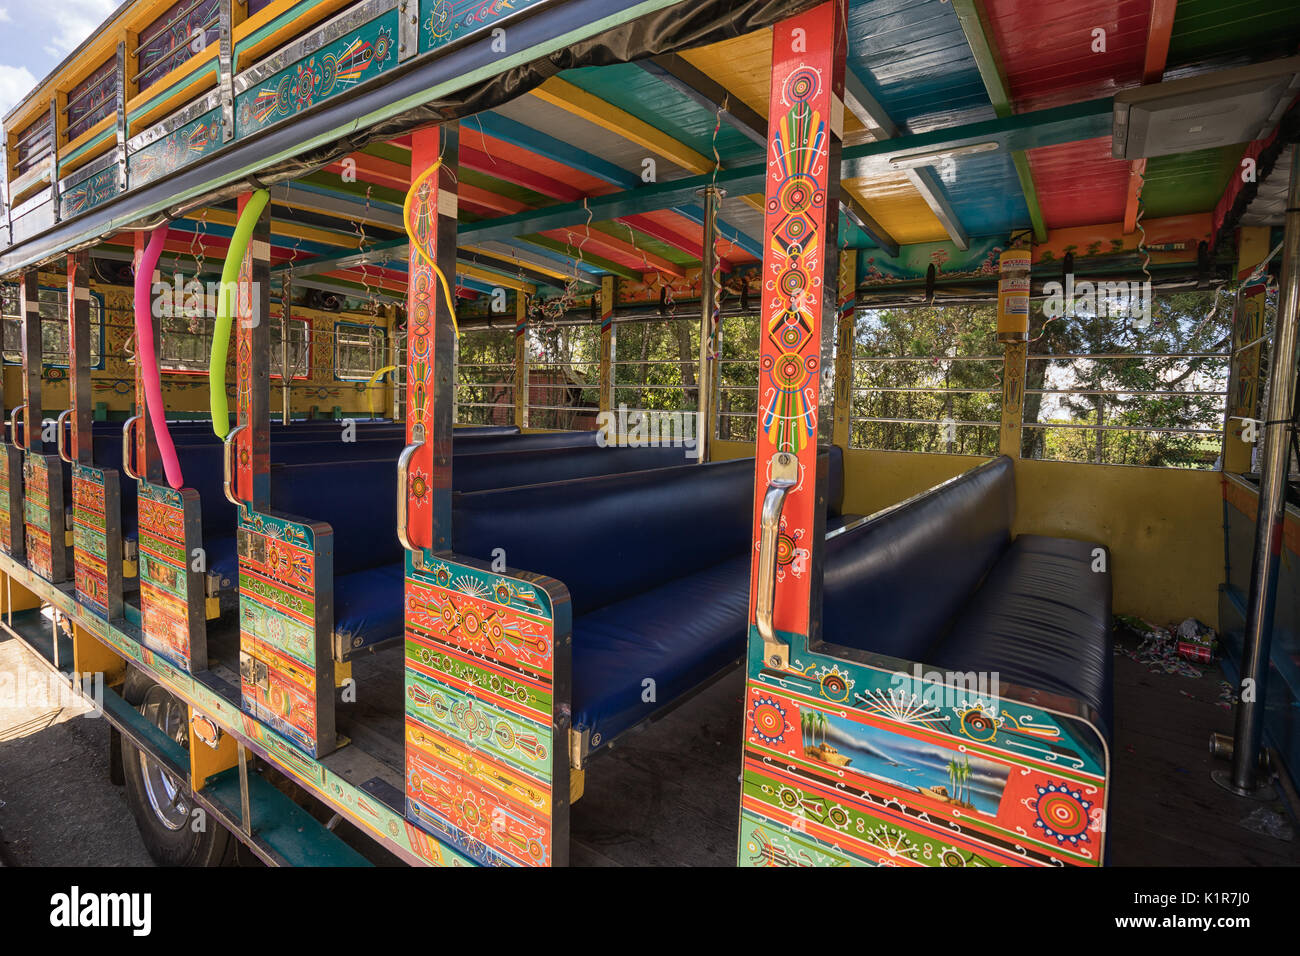 August 6, 2017 Medellin, Kolumbien: Bunte vintage Busse genannt "Chiva" für günstige öffentliche Verkehrsmittel verwendet werden, um alle durch das Land beliebt Stockfoto